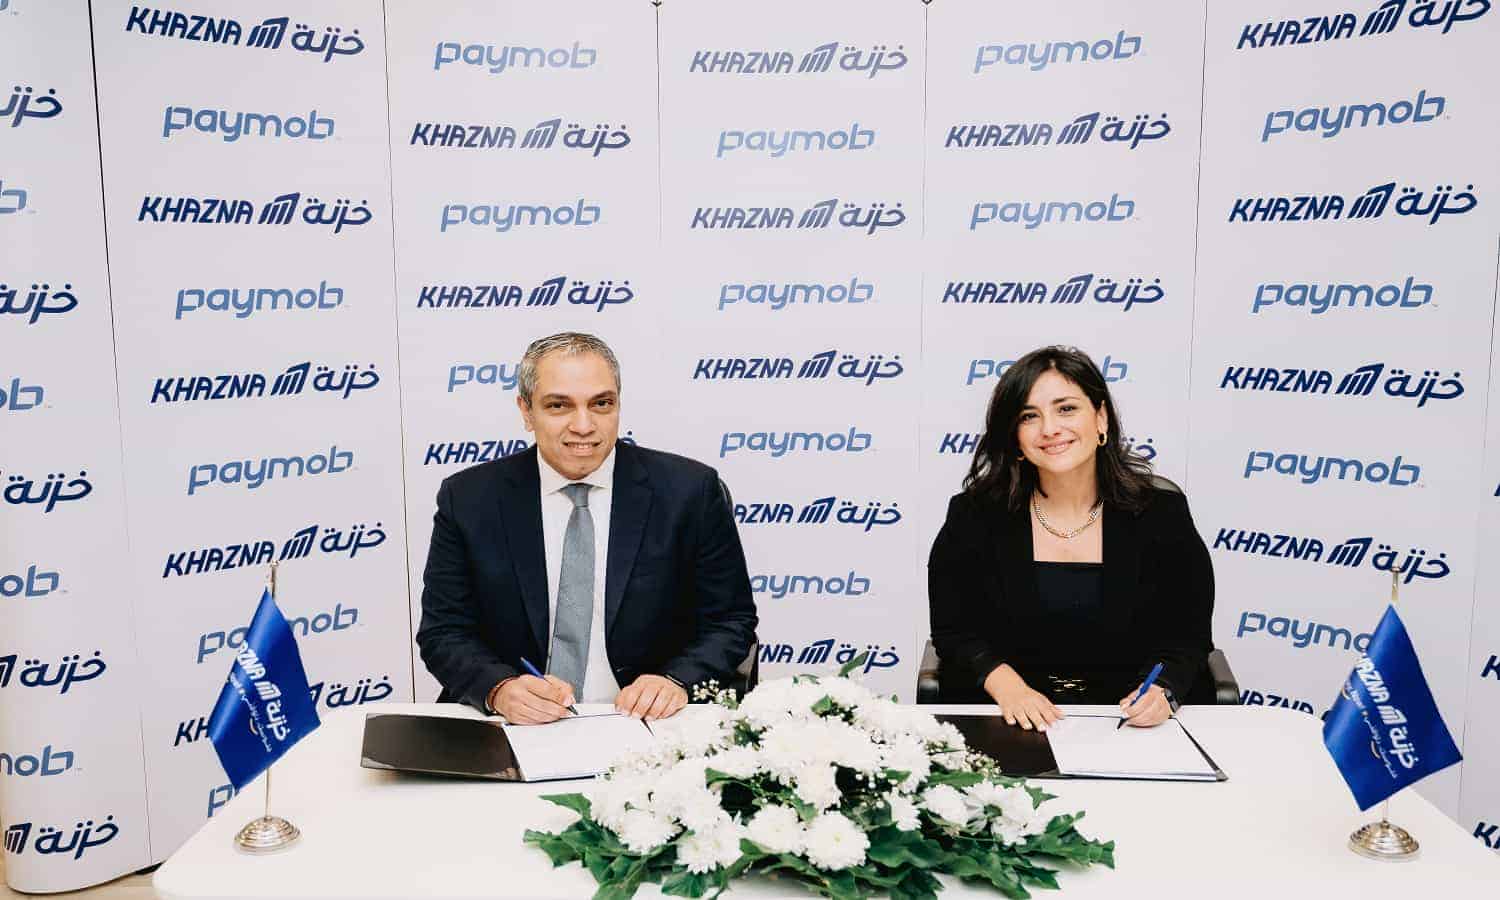 اتفاقية شراكة بين Paymob وخزنة لإتاحة المزيد من خدمات المالية الرقمية 